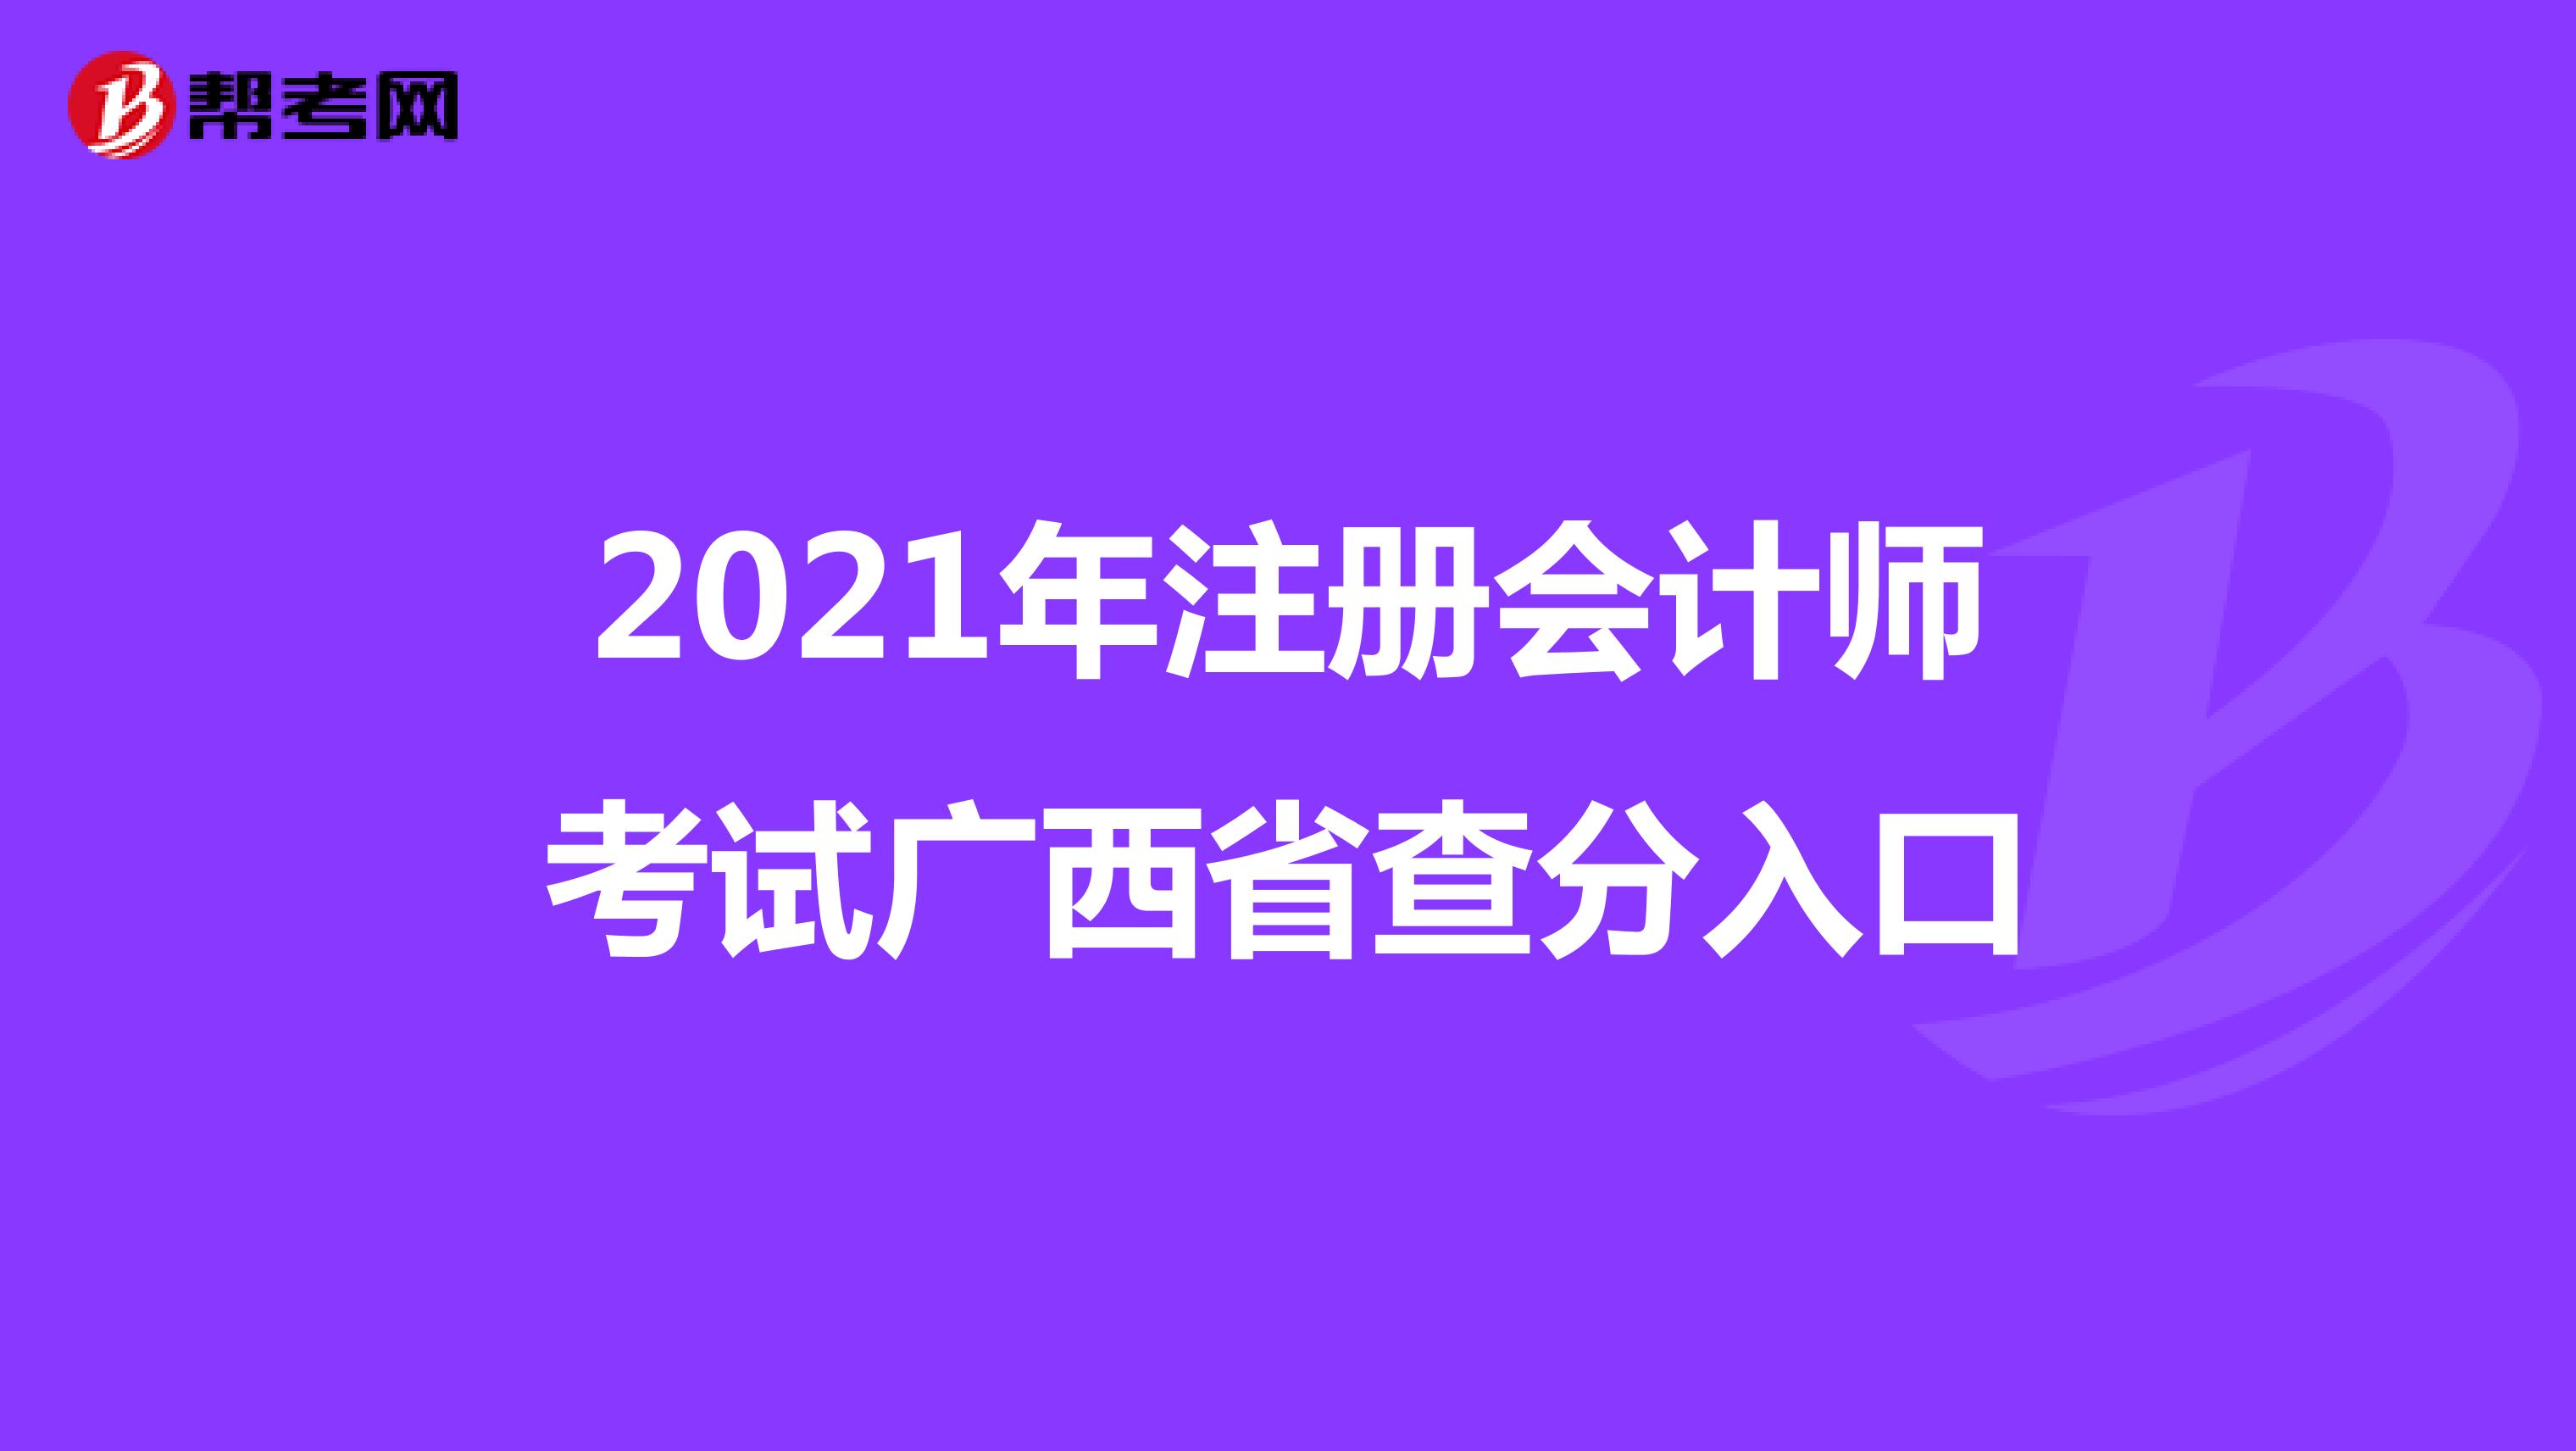 2021年注册会计师考试广西省查分入口